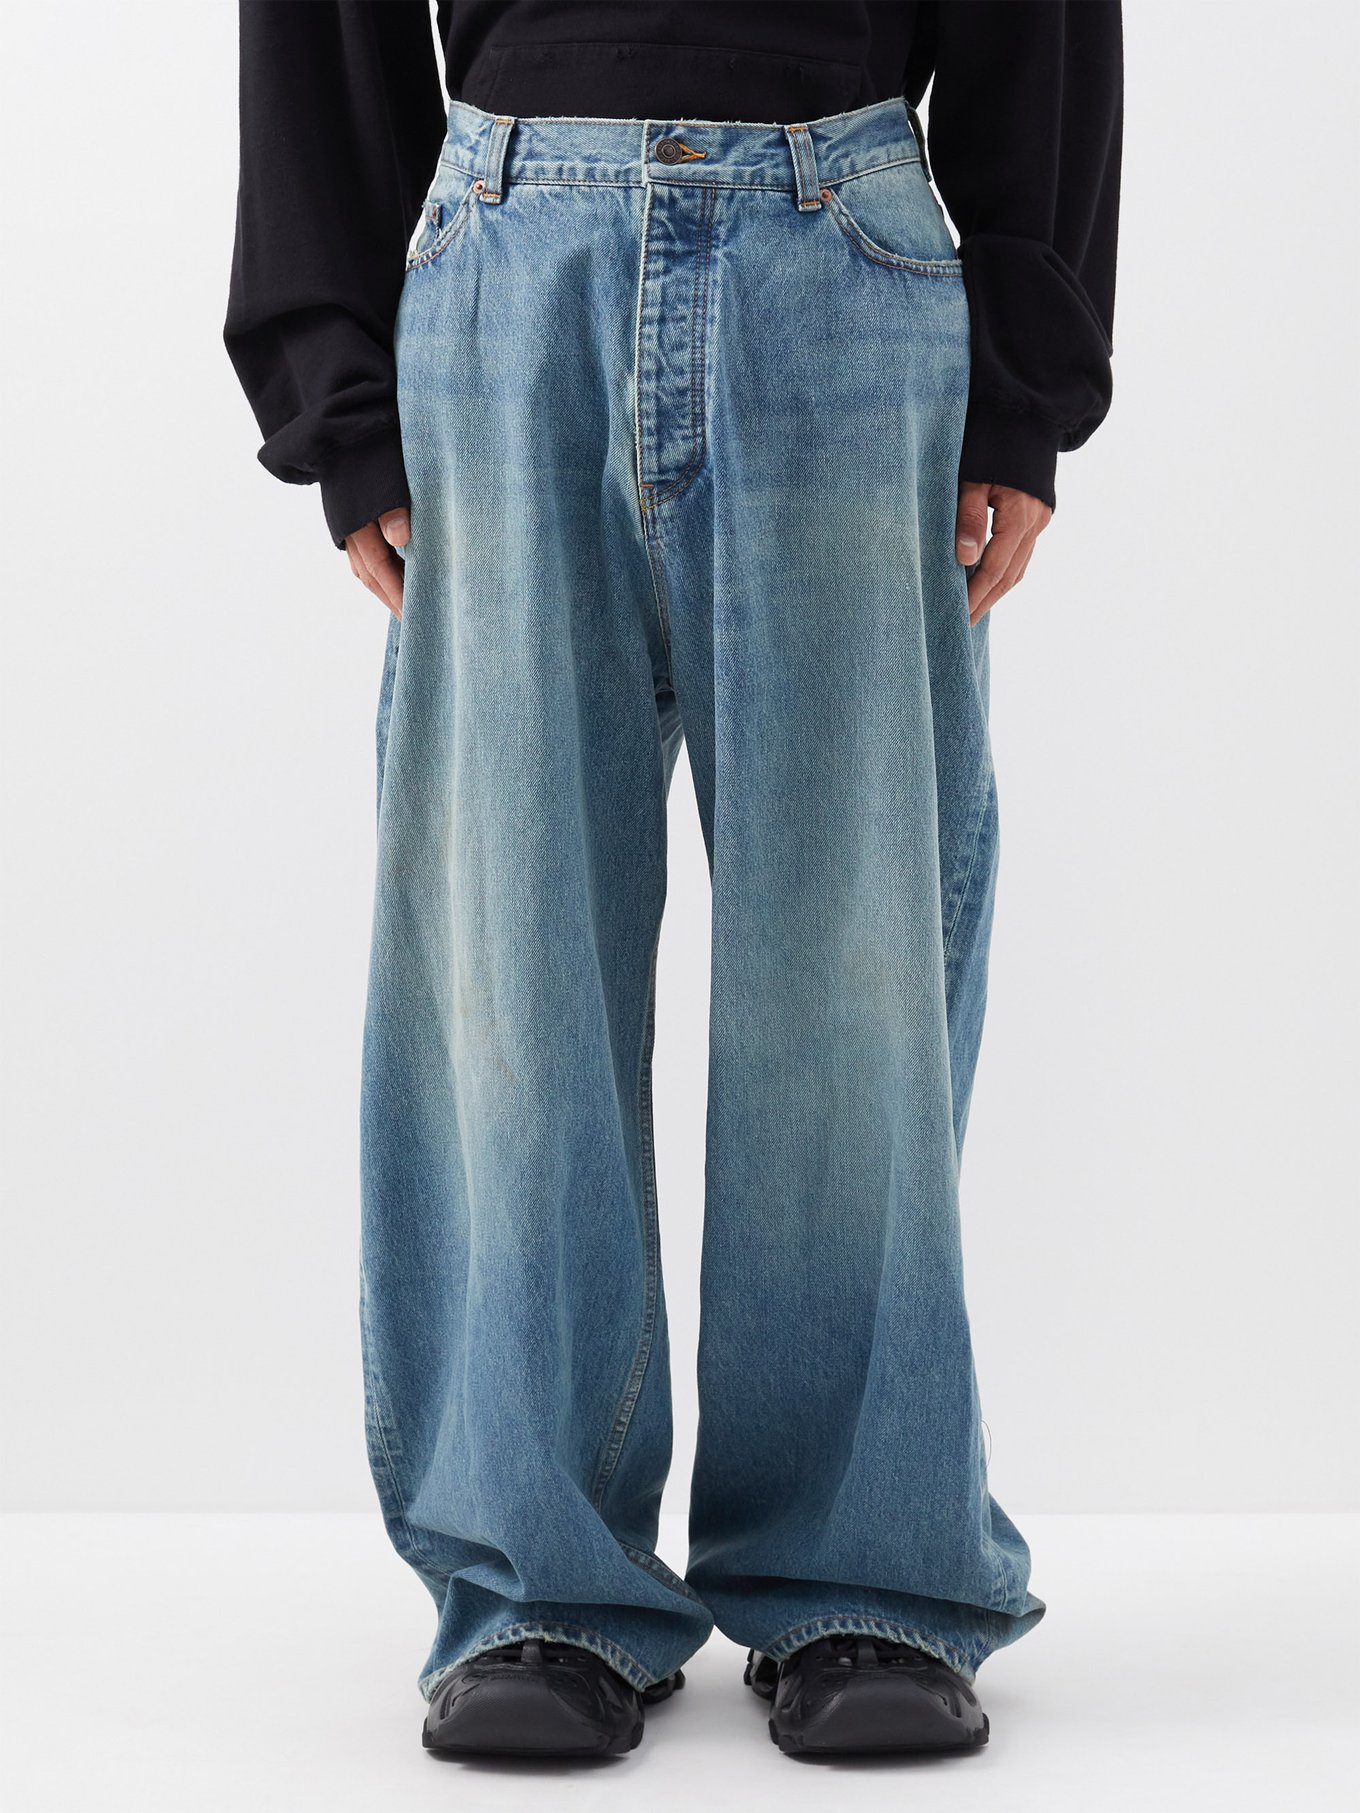 Oversized wide-leg jeans video